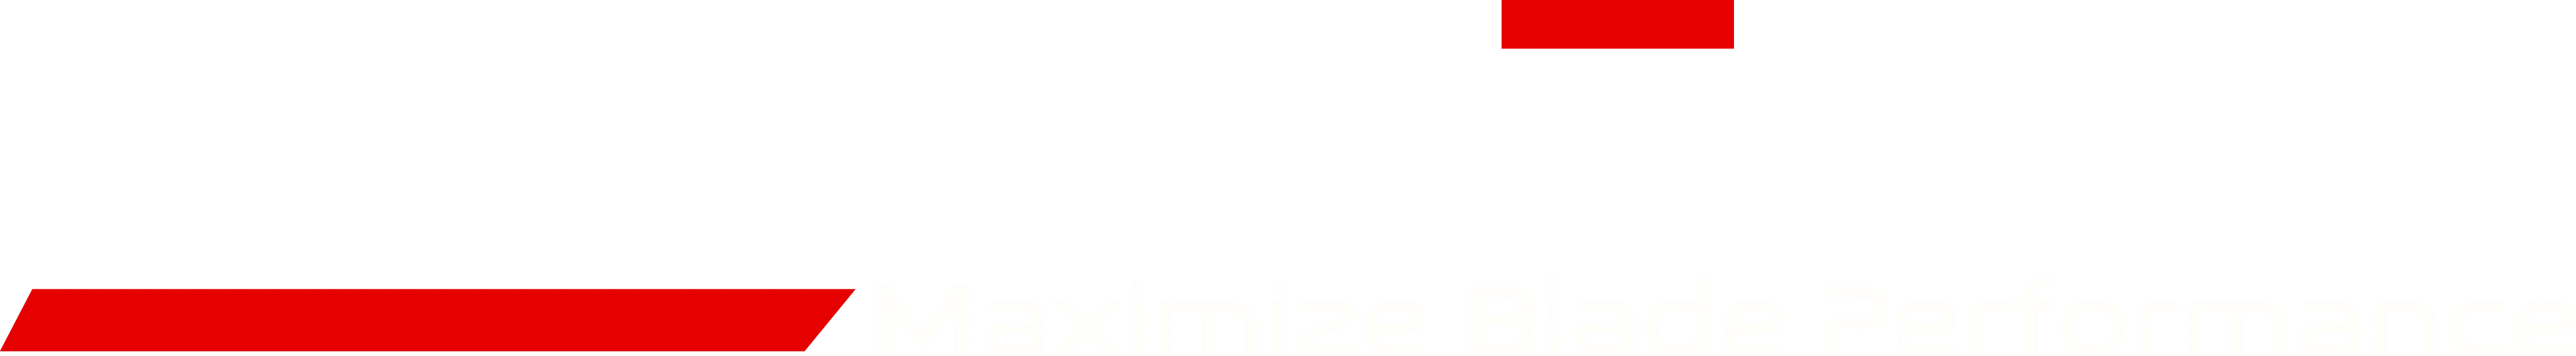 skate_fuel_logo